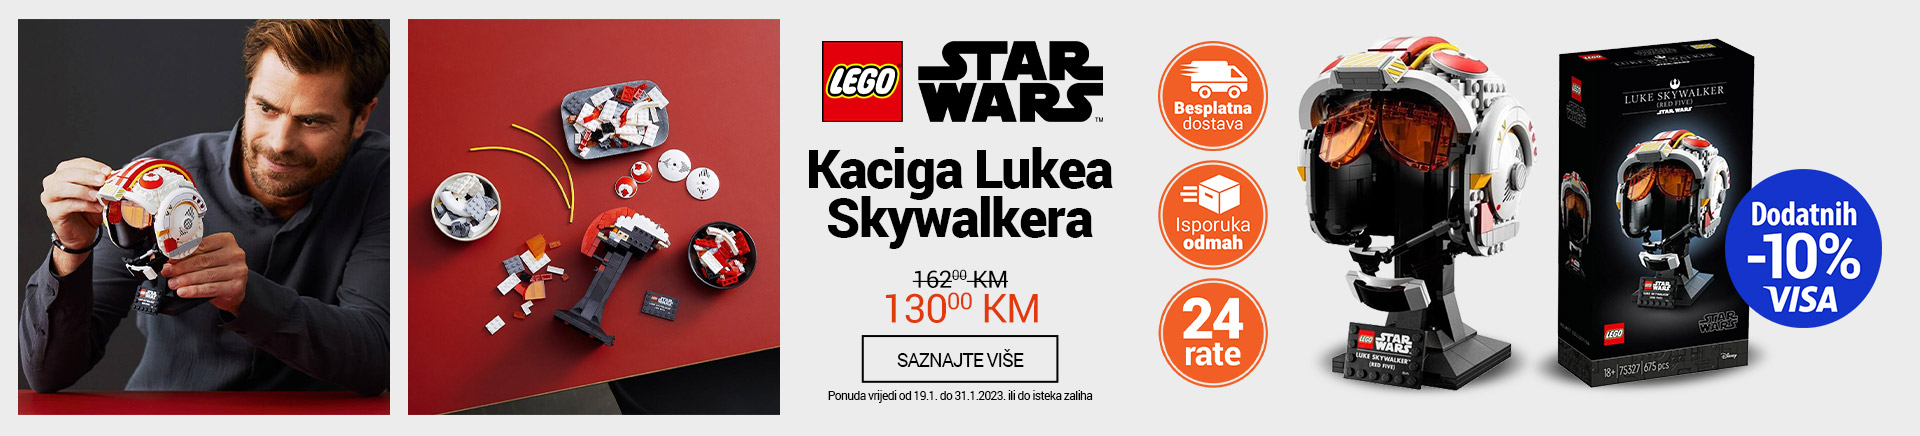 BA LEGO STAR WARS Kaciga Lukea Skywalkera MOBILE 380 X 436.jpg